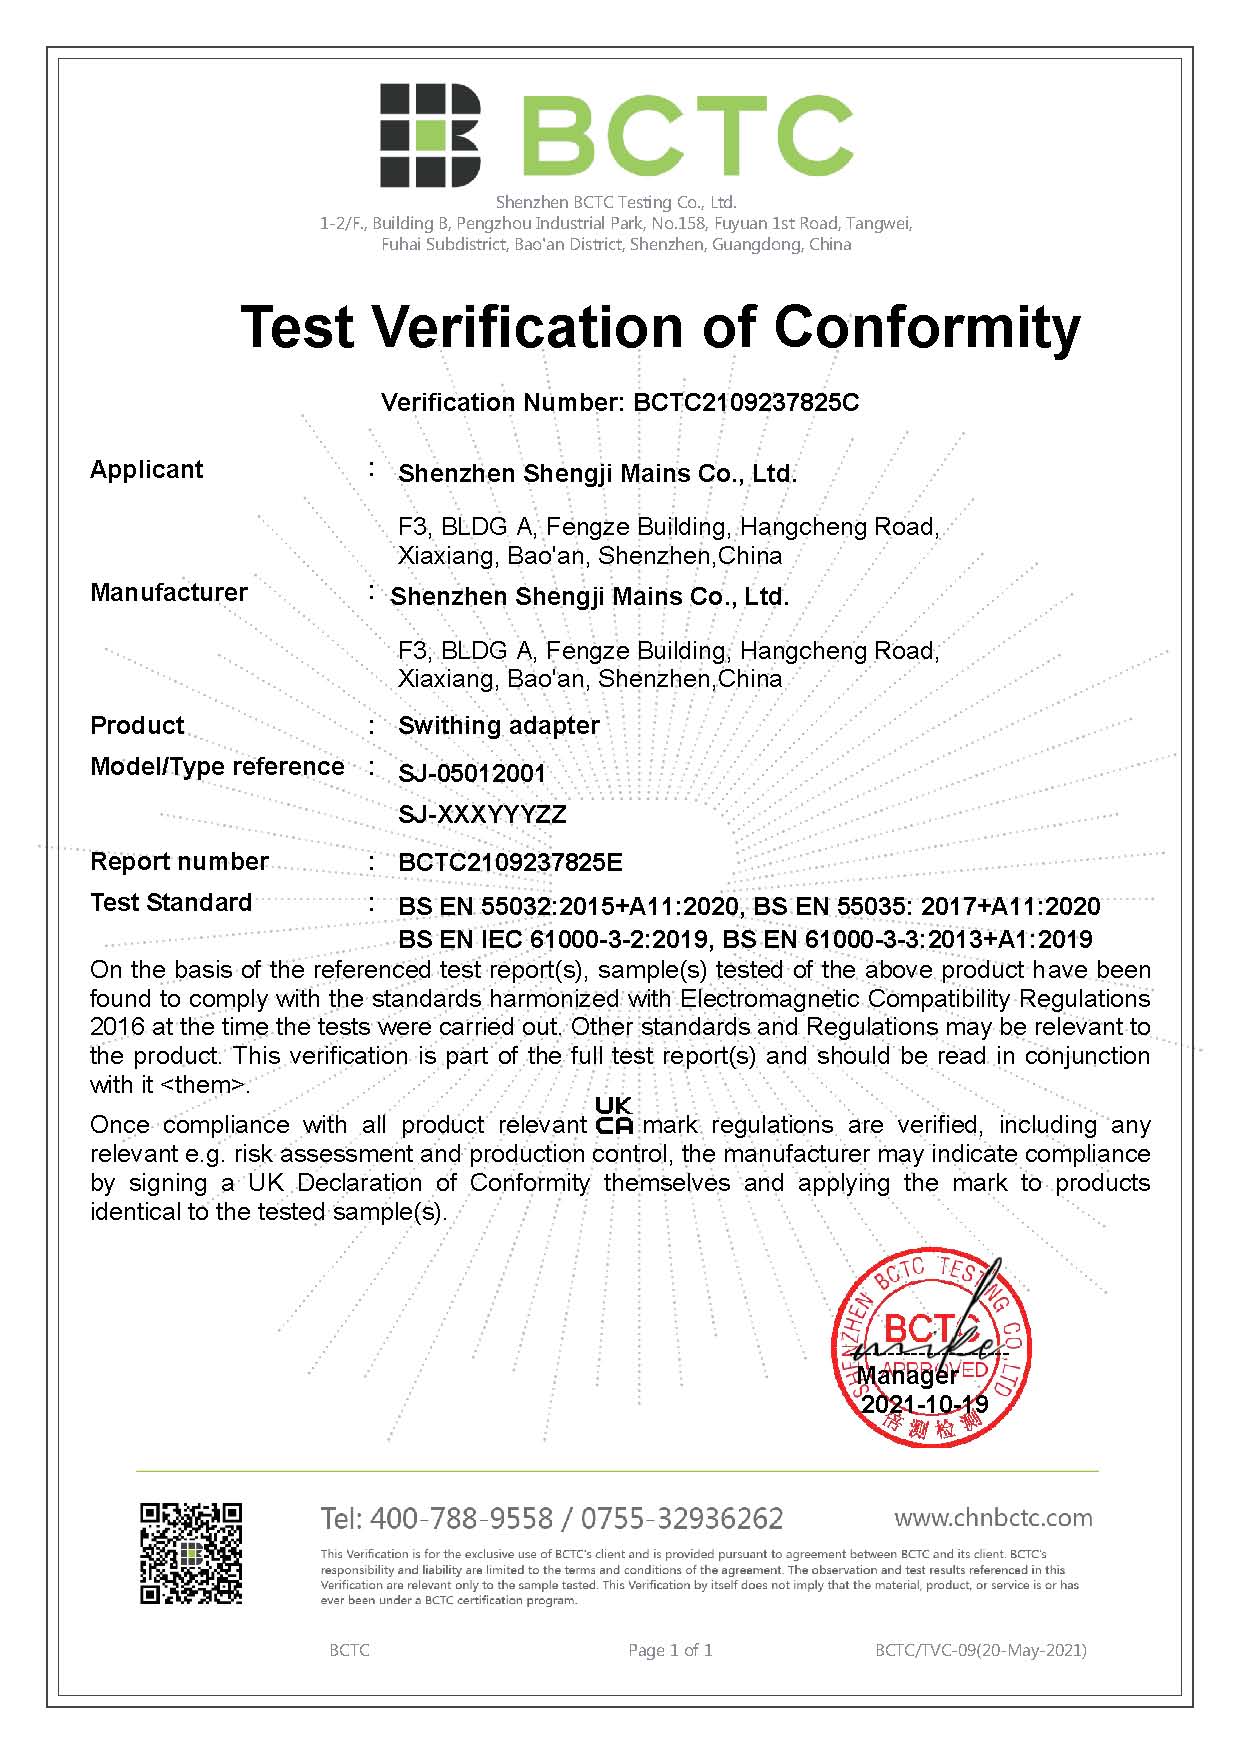 UKCA Certificate